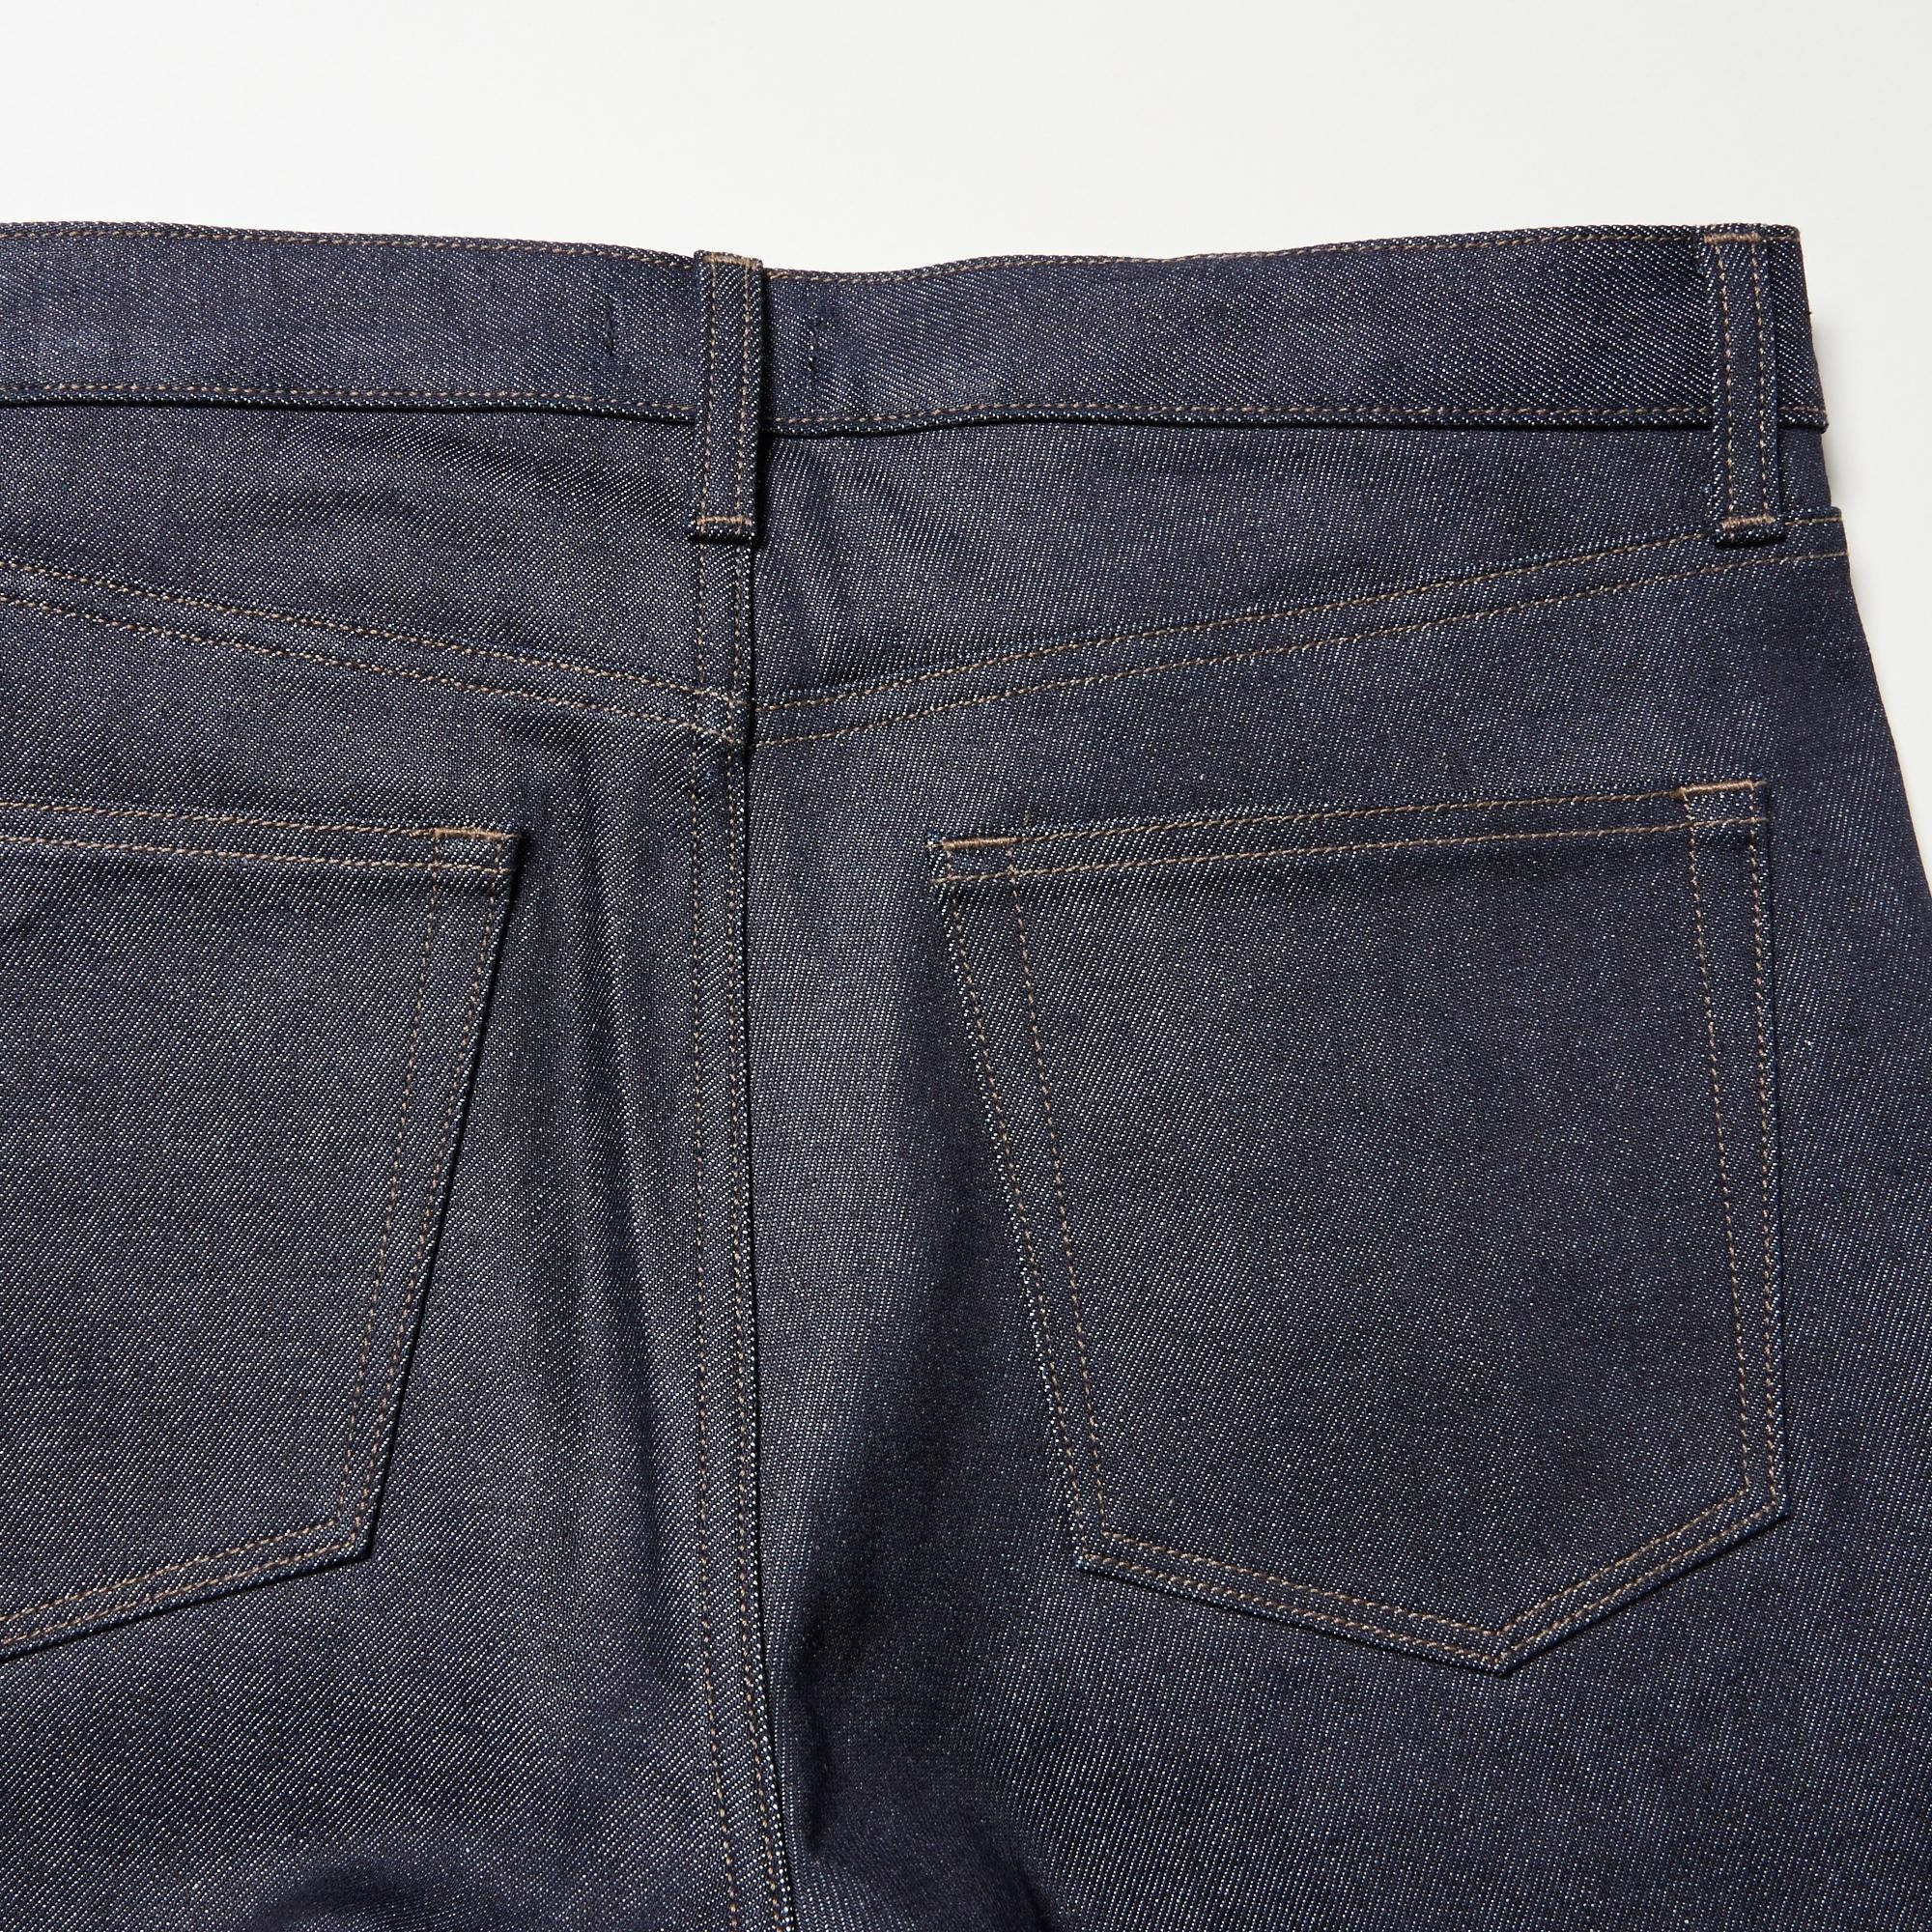 uniqlo selvedge jeans size 32  eBay